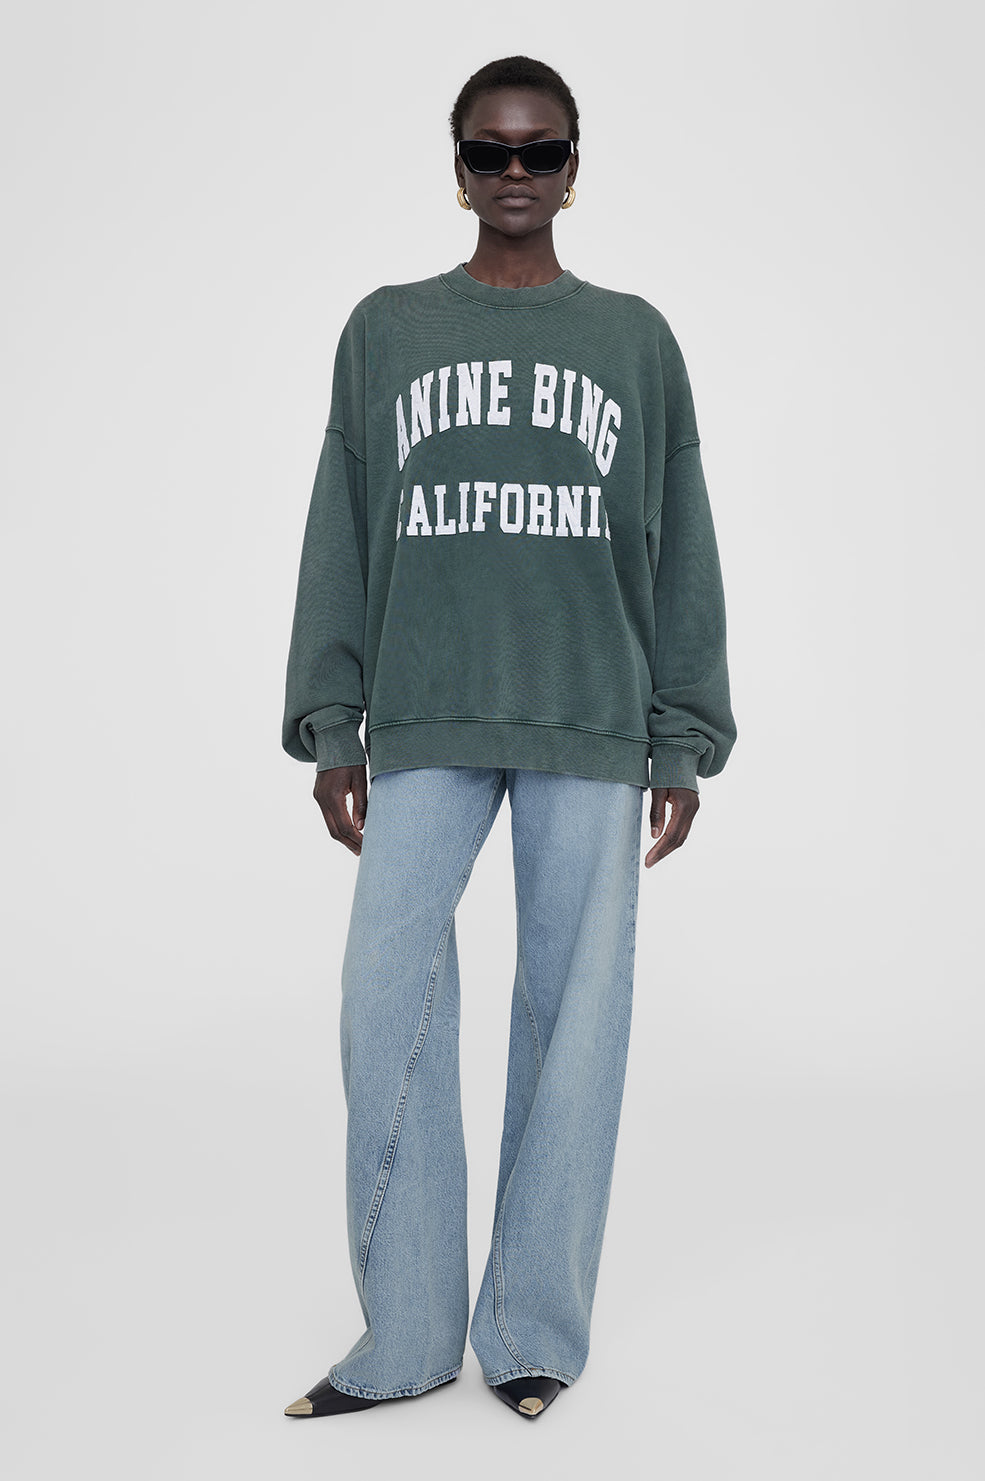 Miles Sweatshirt Anine Bing  product image